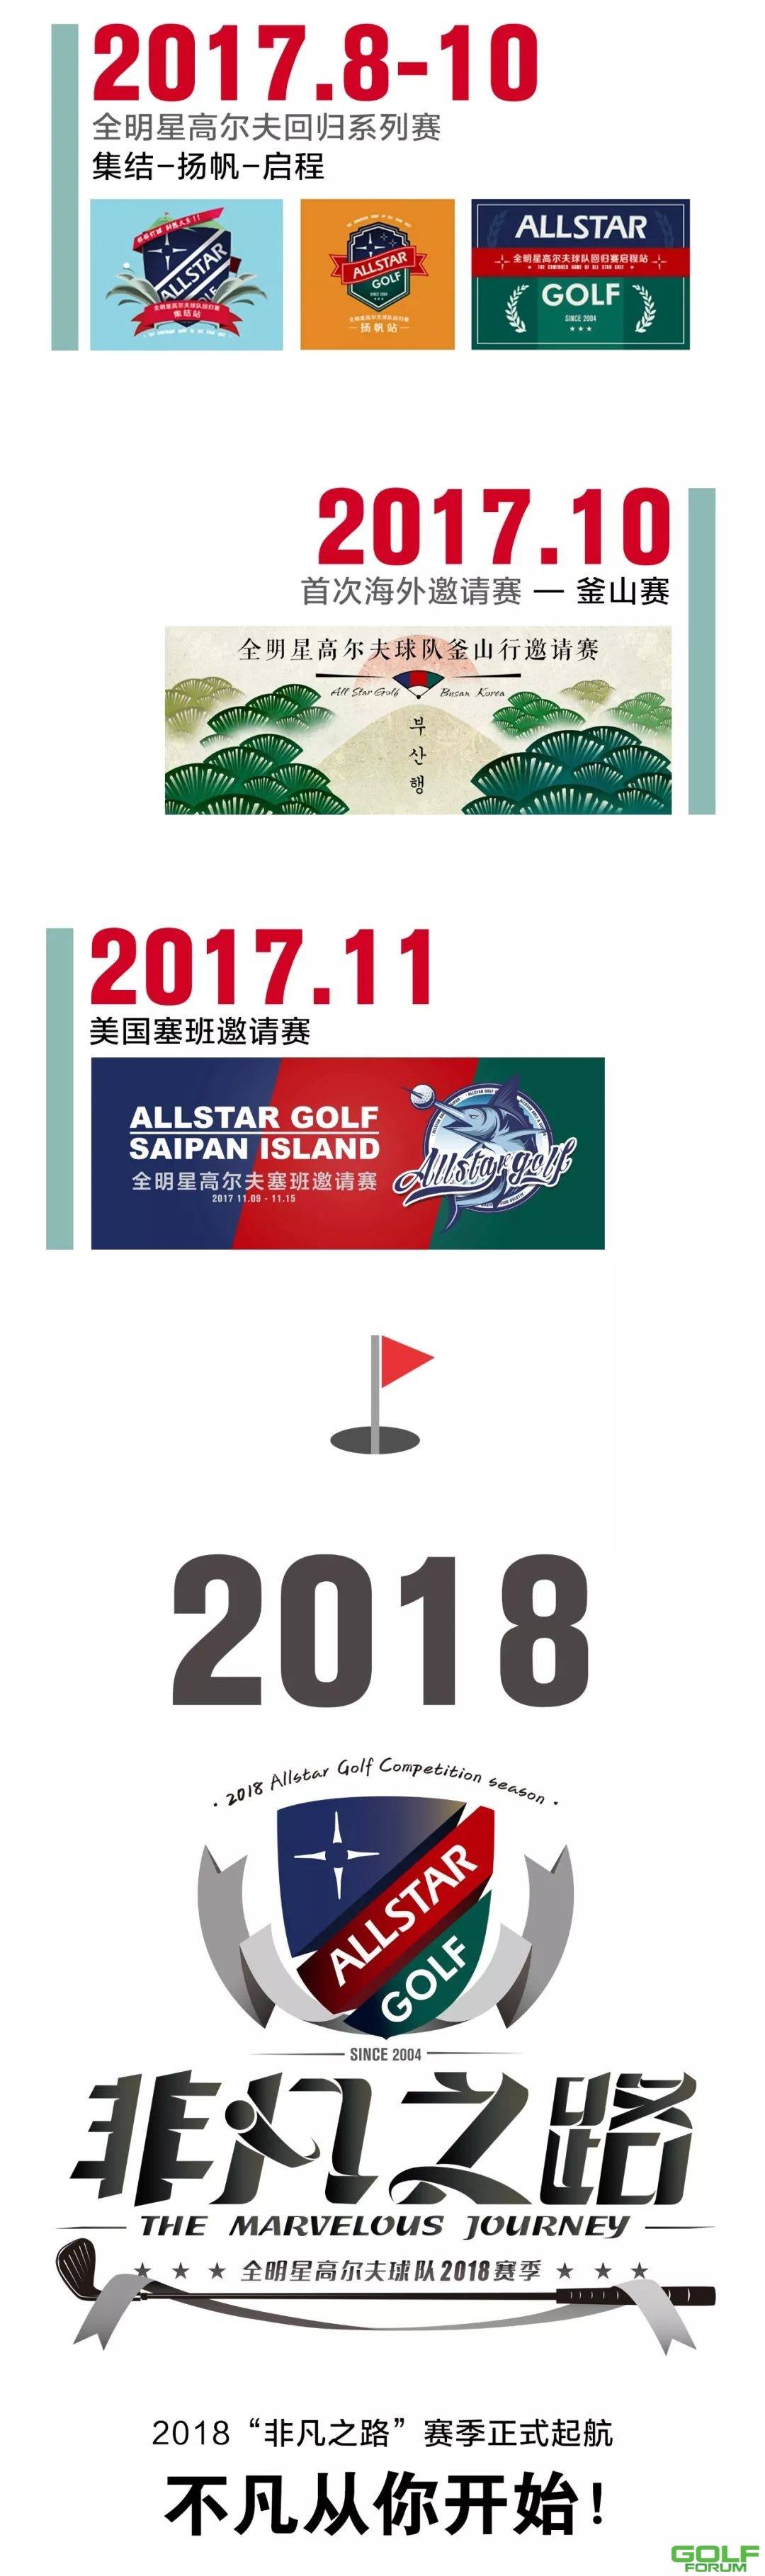 来了！全明星高尔夫2018赛季